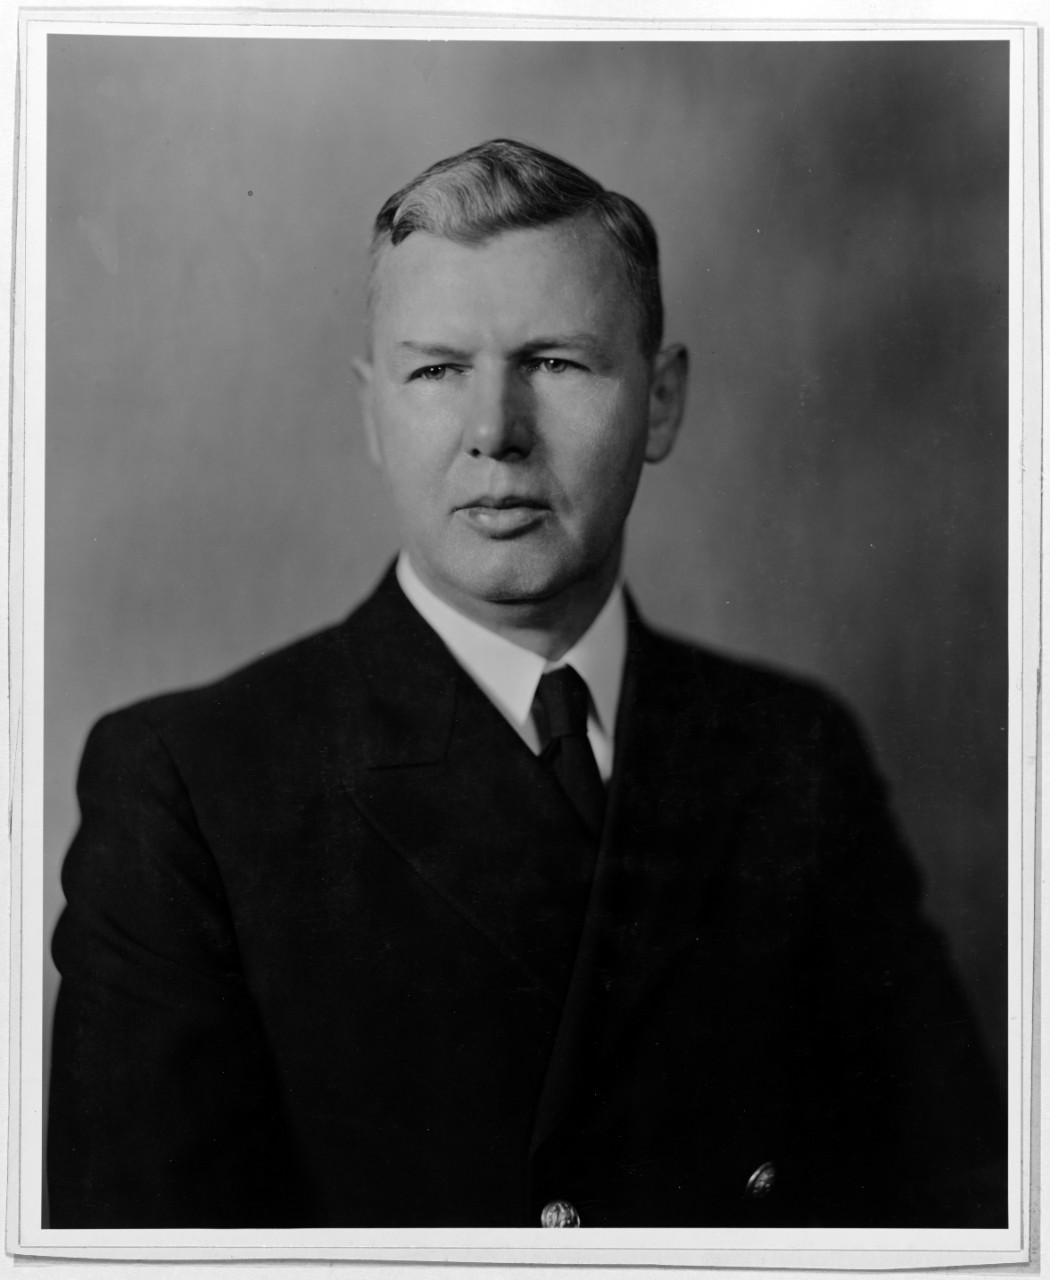 Commander John E. Dingwell, USN